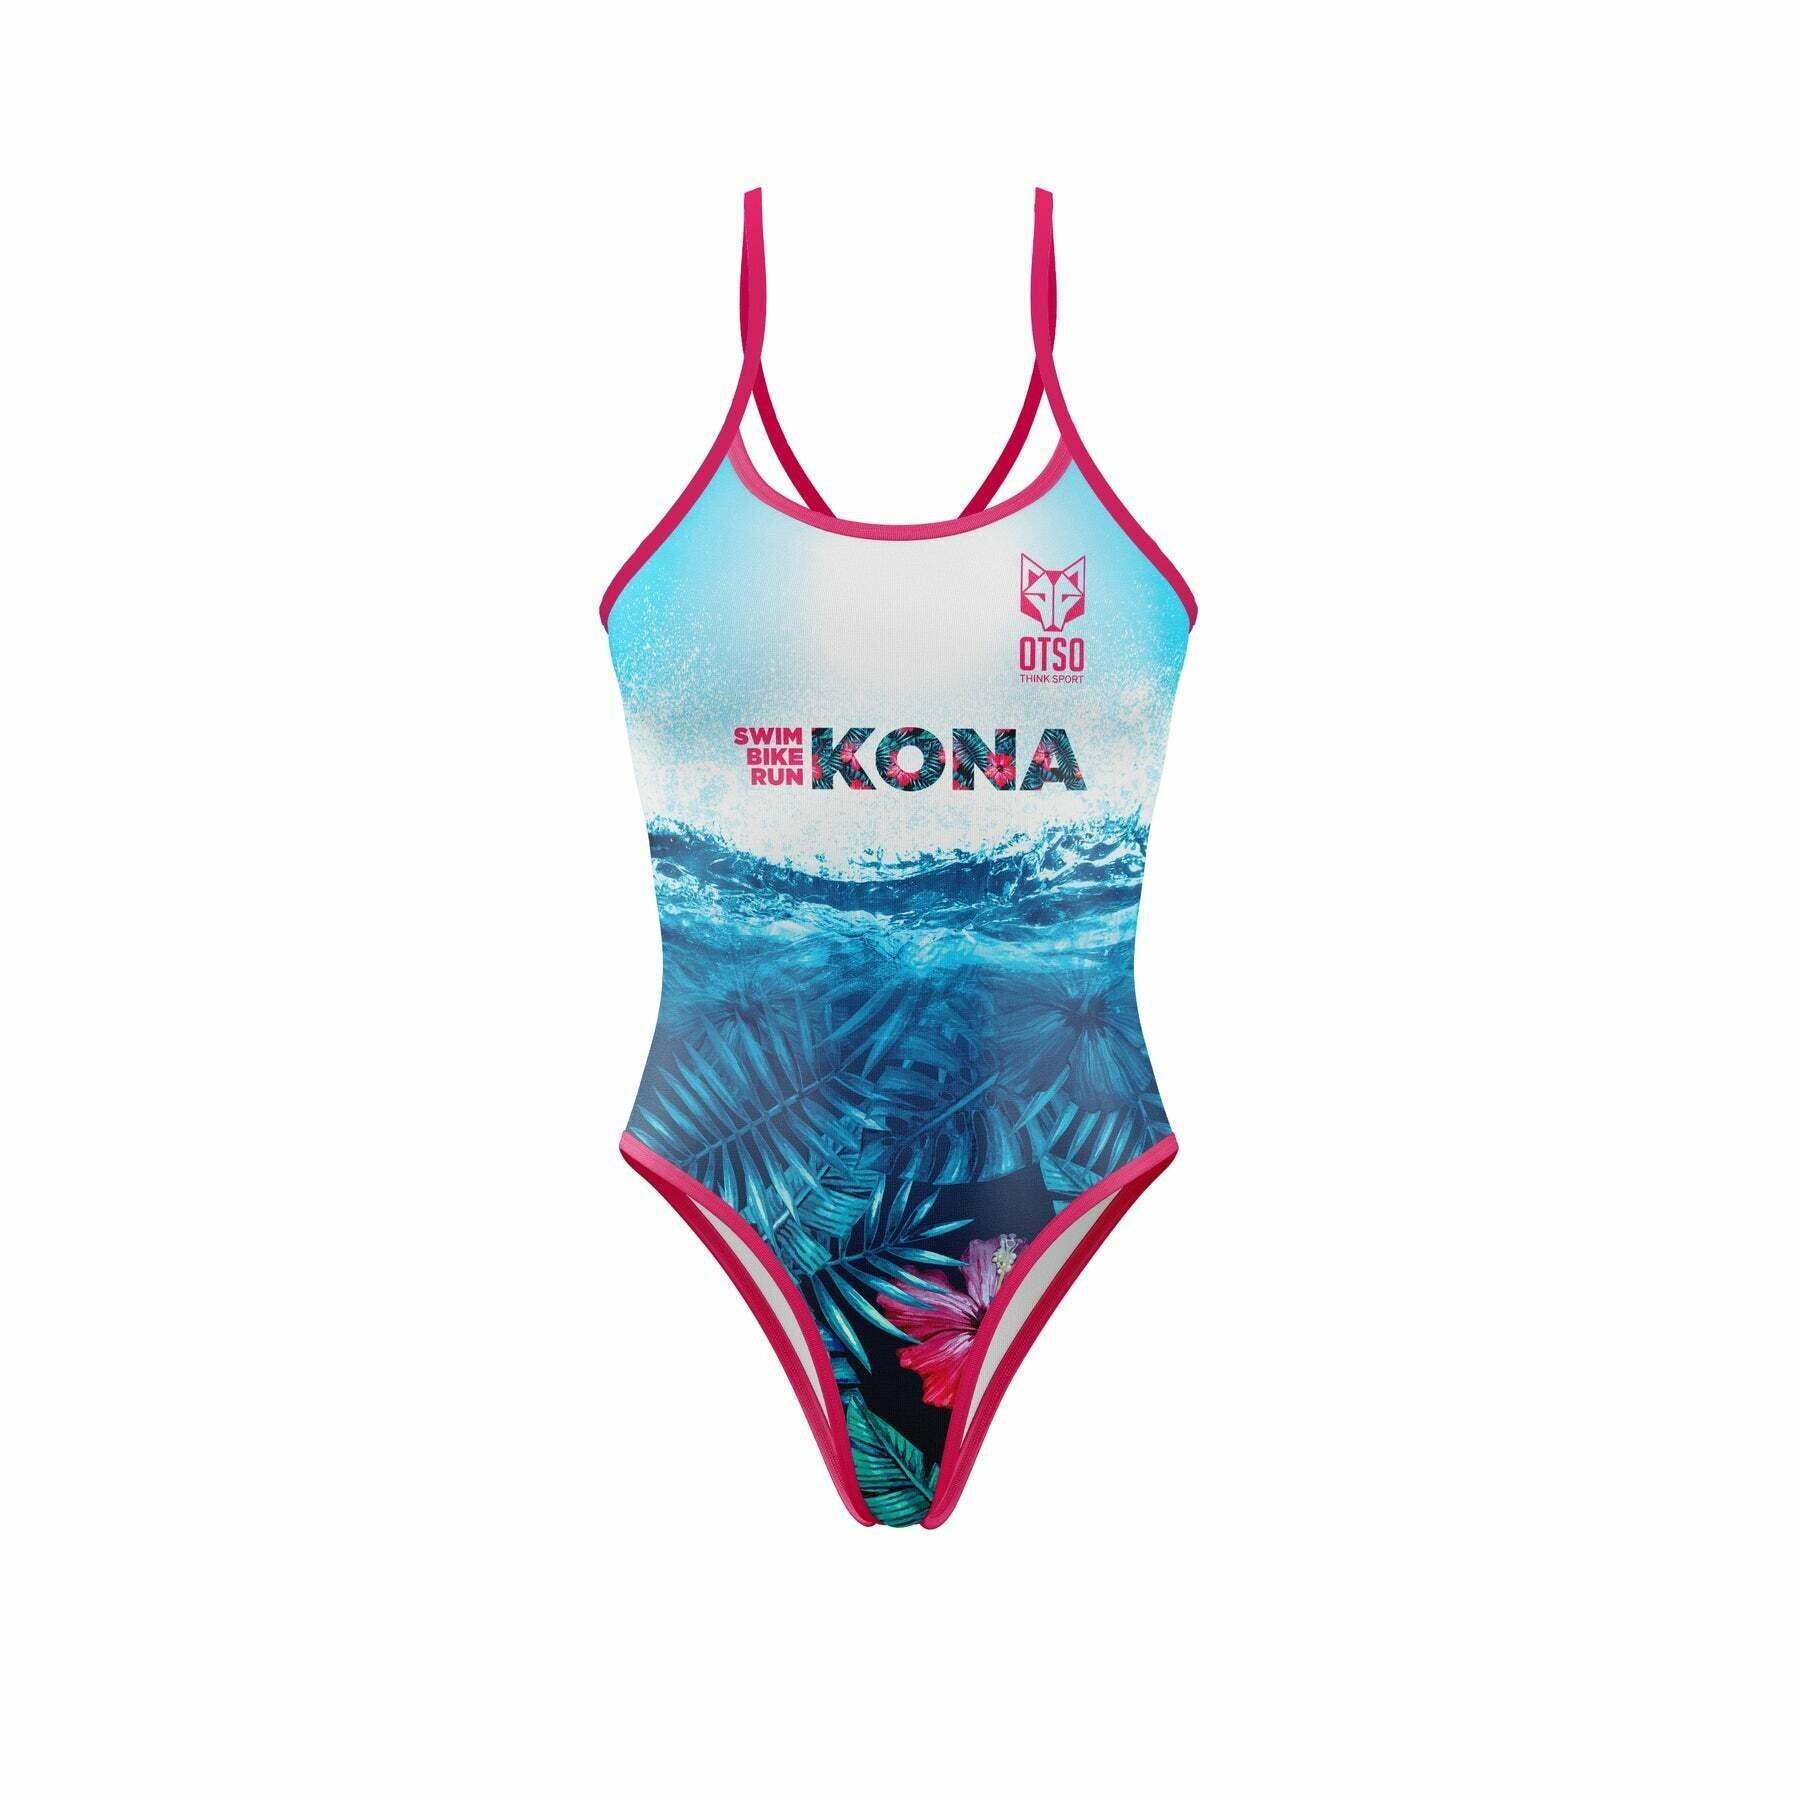 Women's swimsuit Otso Kona